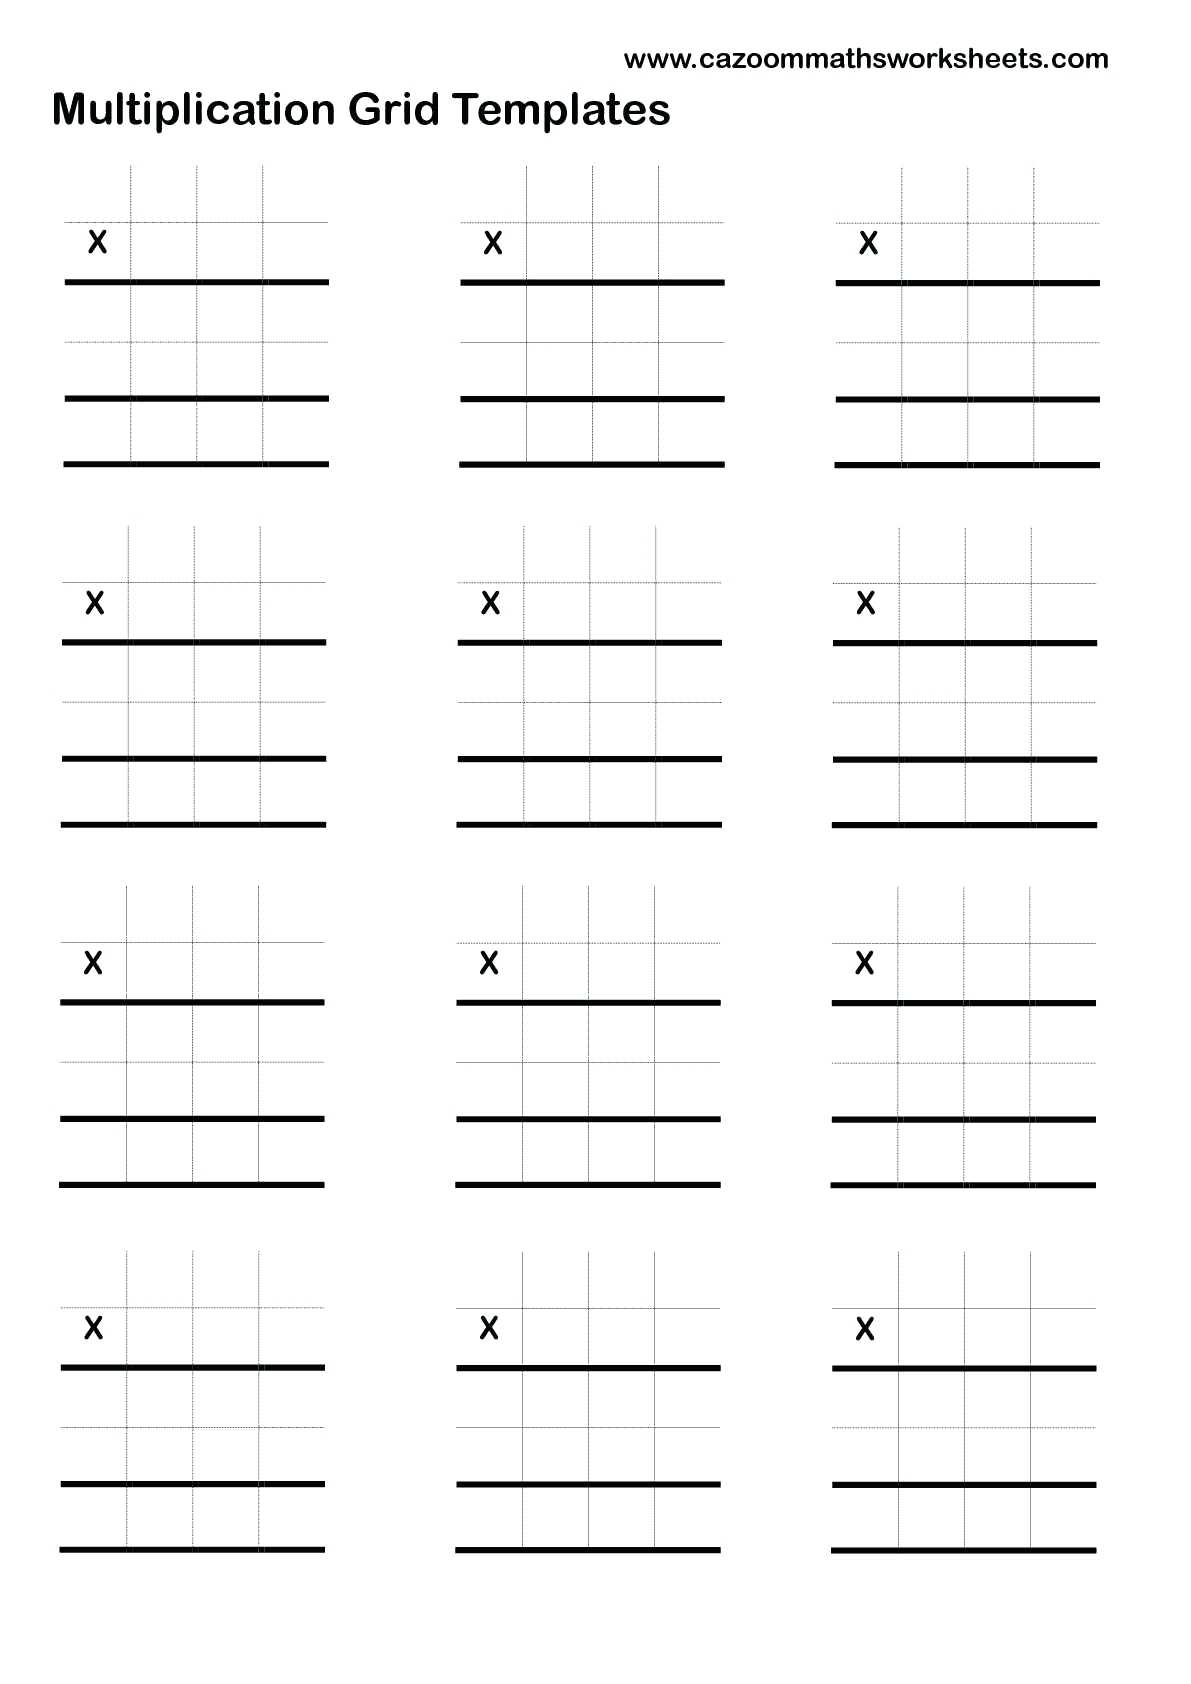 Free Printable Lattice Multiplication Grids PrintableMultiplication